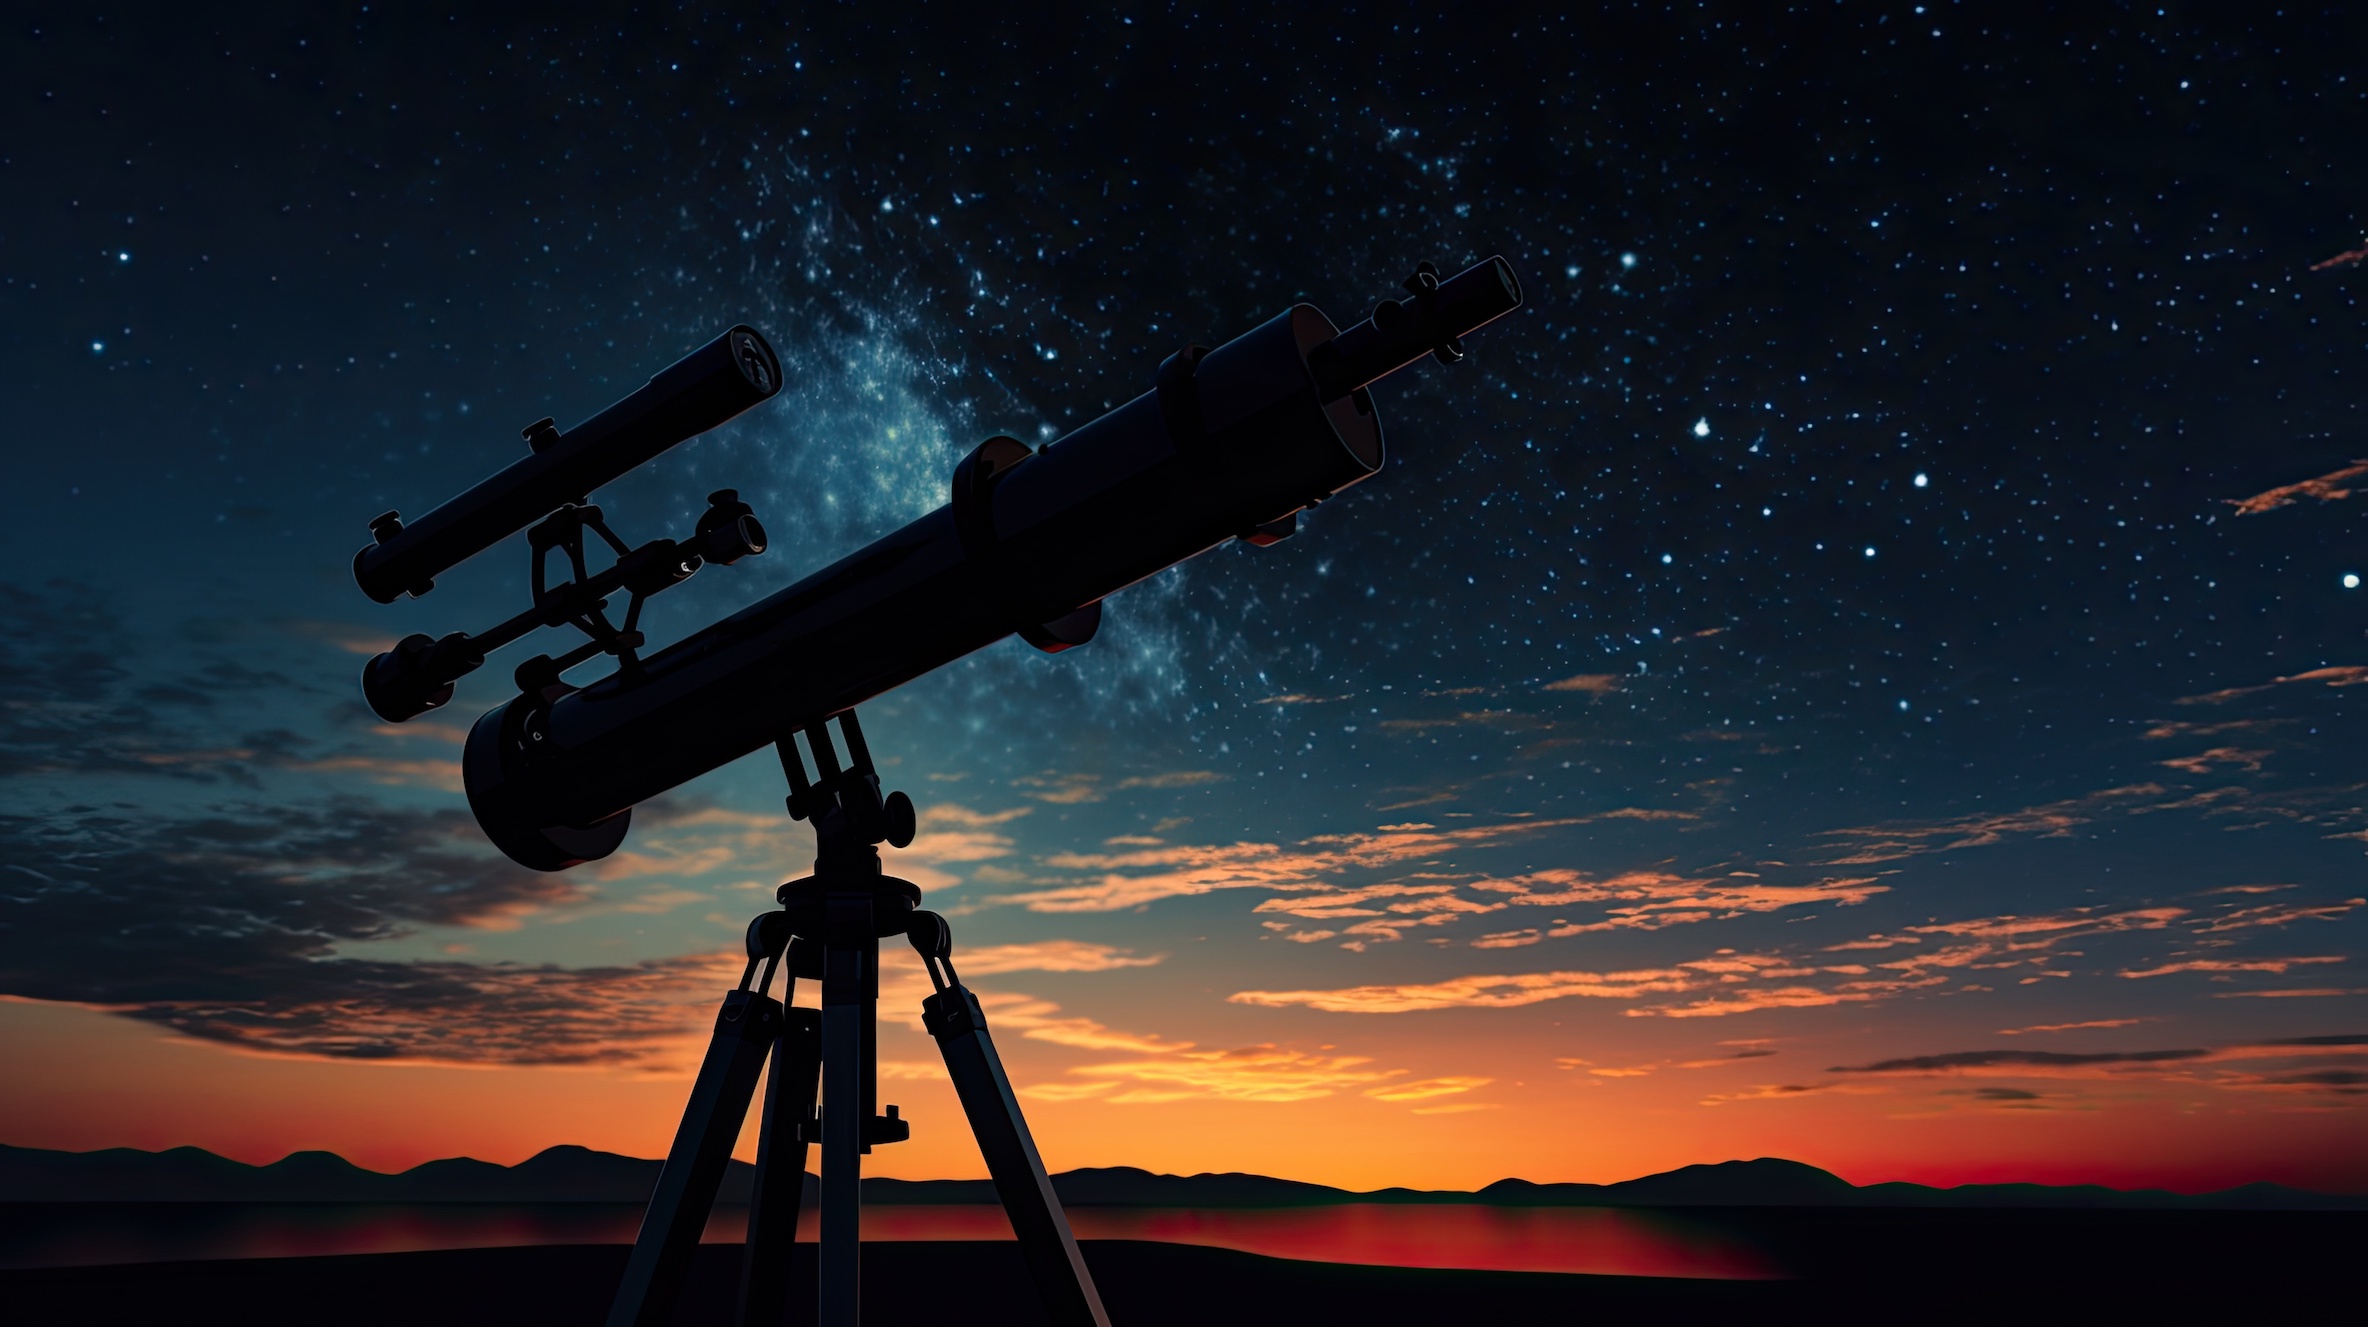 Un grand alignement planétaire impliquant six planètes est prévu dans le ciel de juin. © HN Works, Adobe Stock